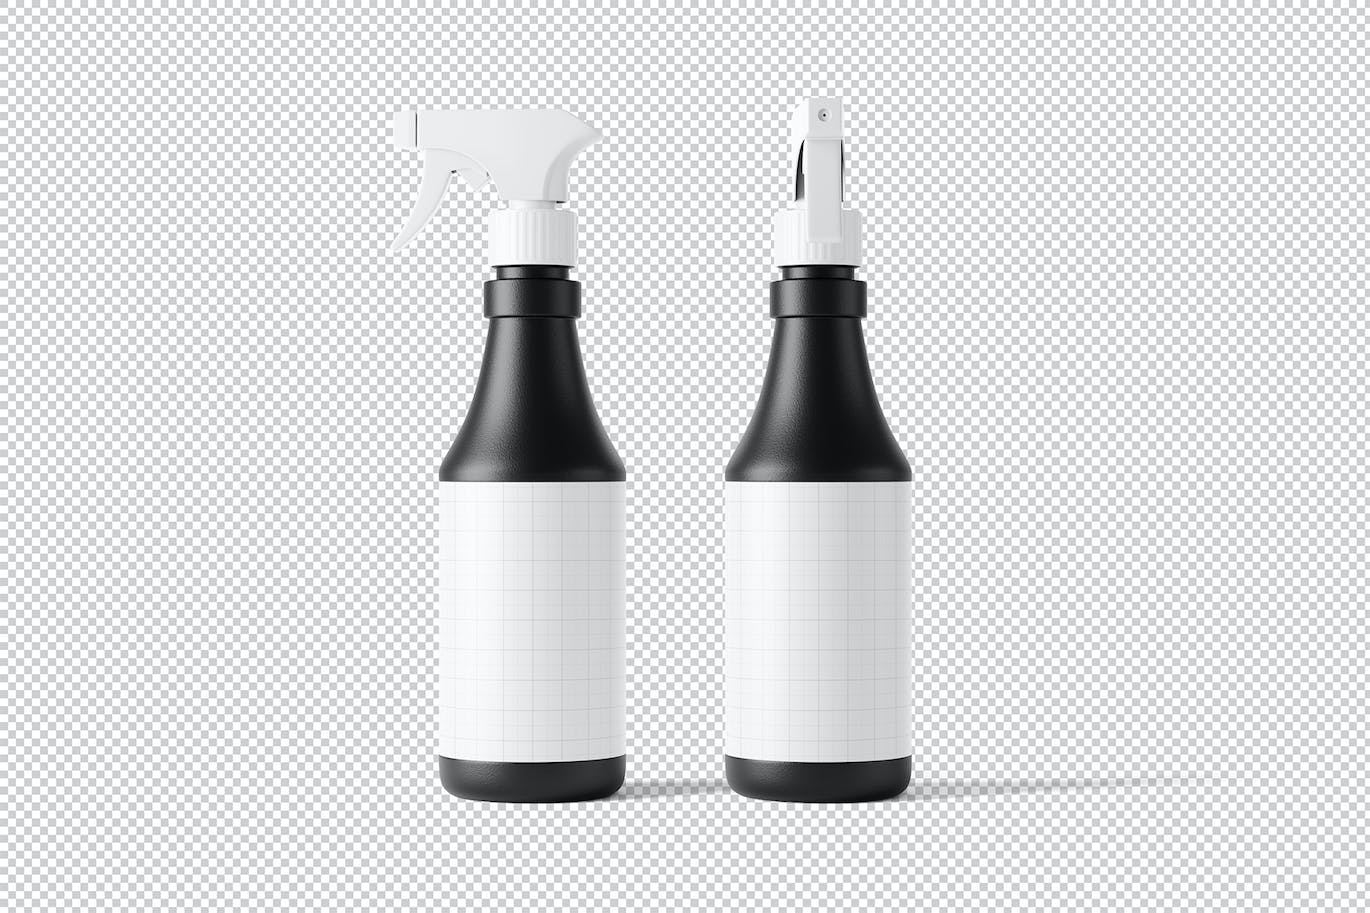 喷雾清洁剂瓶包装设计样机图 Spray Bottle Mockup 样机素材 第3张